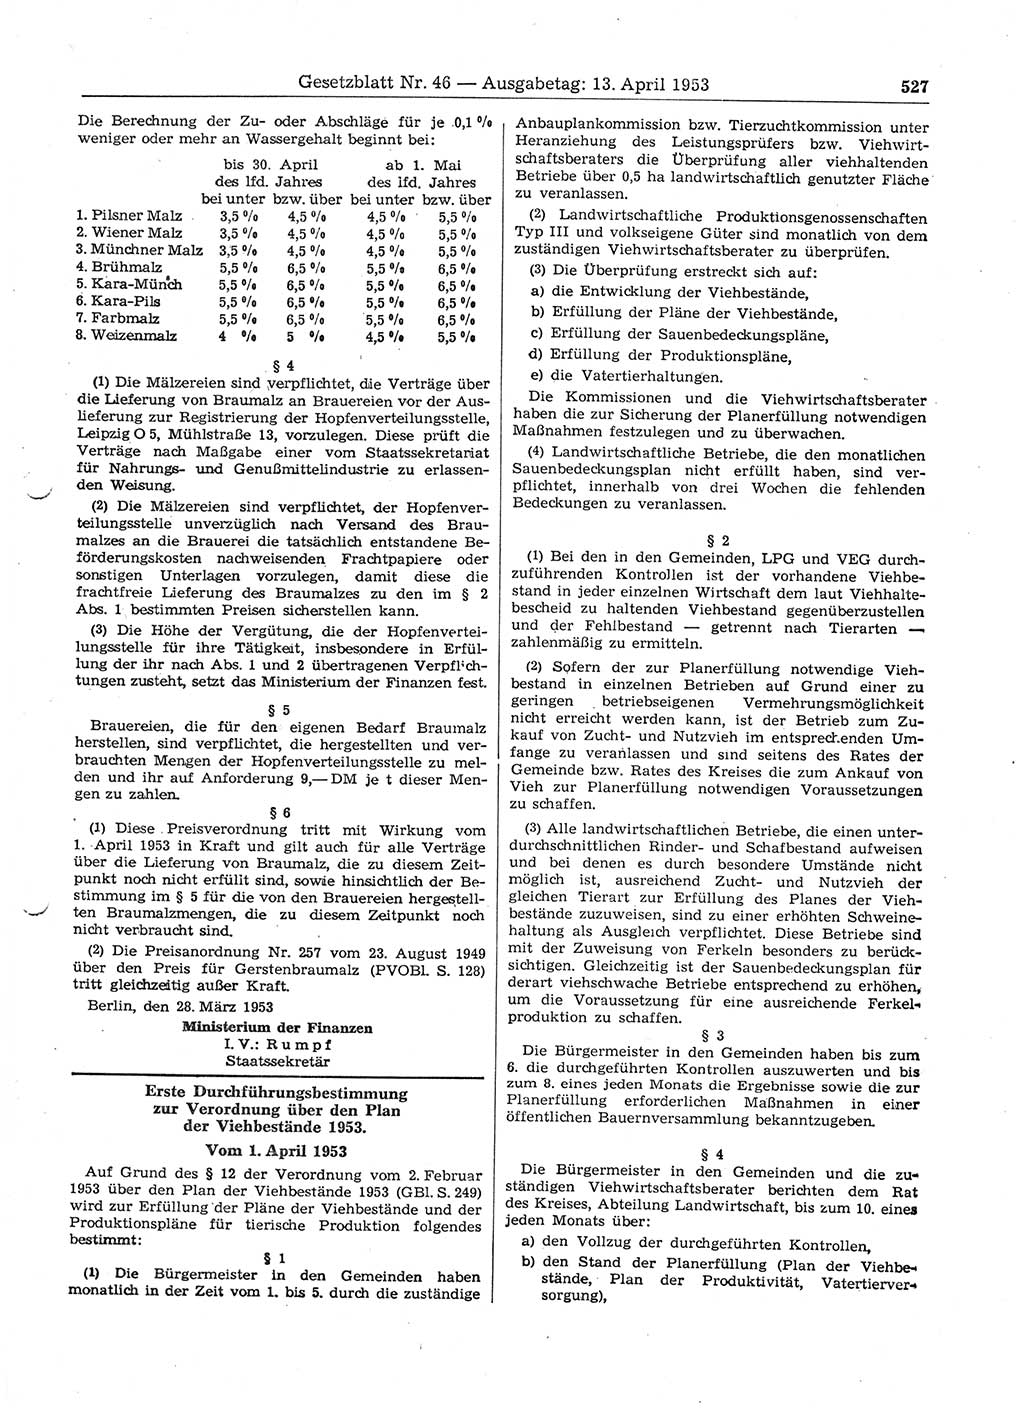 Gesetzblatt (GBl.) der Deutschen Demokratischen Republik (DDR) 1953, Seite 527 (GBl. DDR 1953, S. 527)